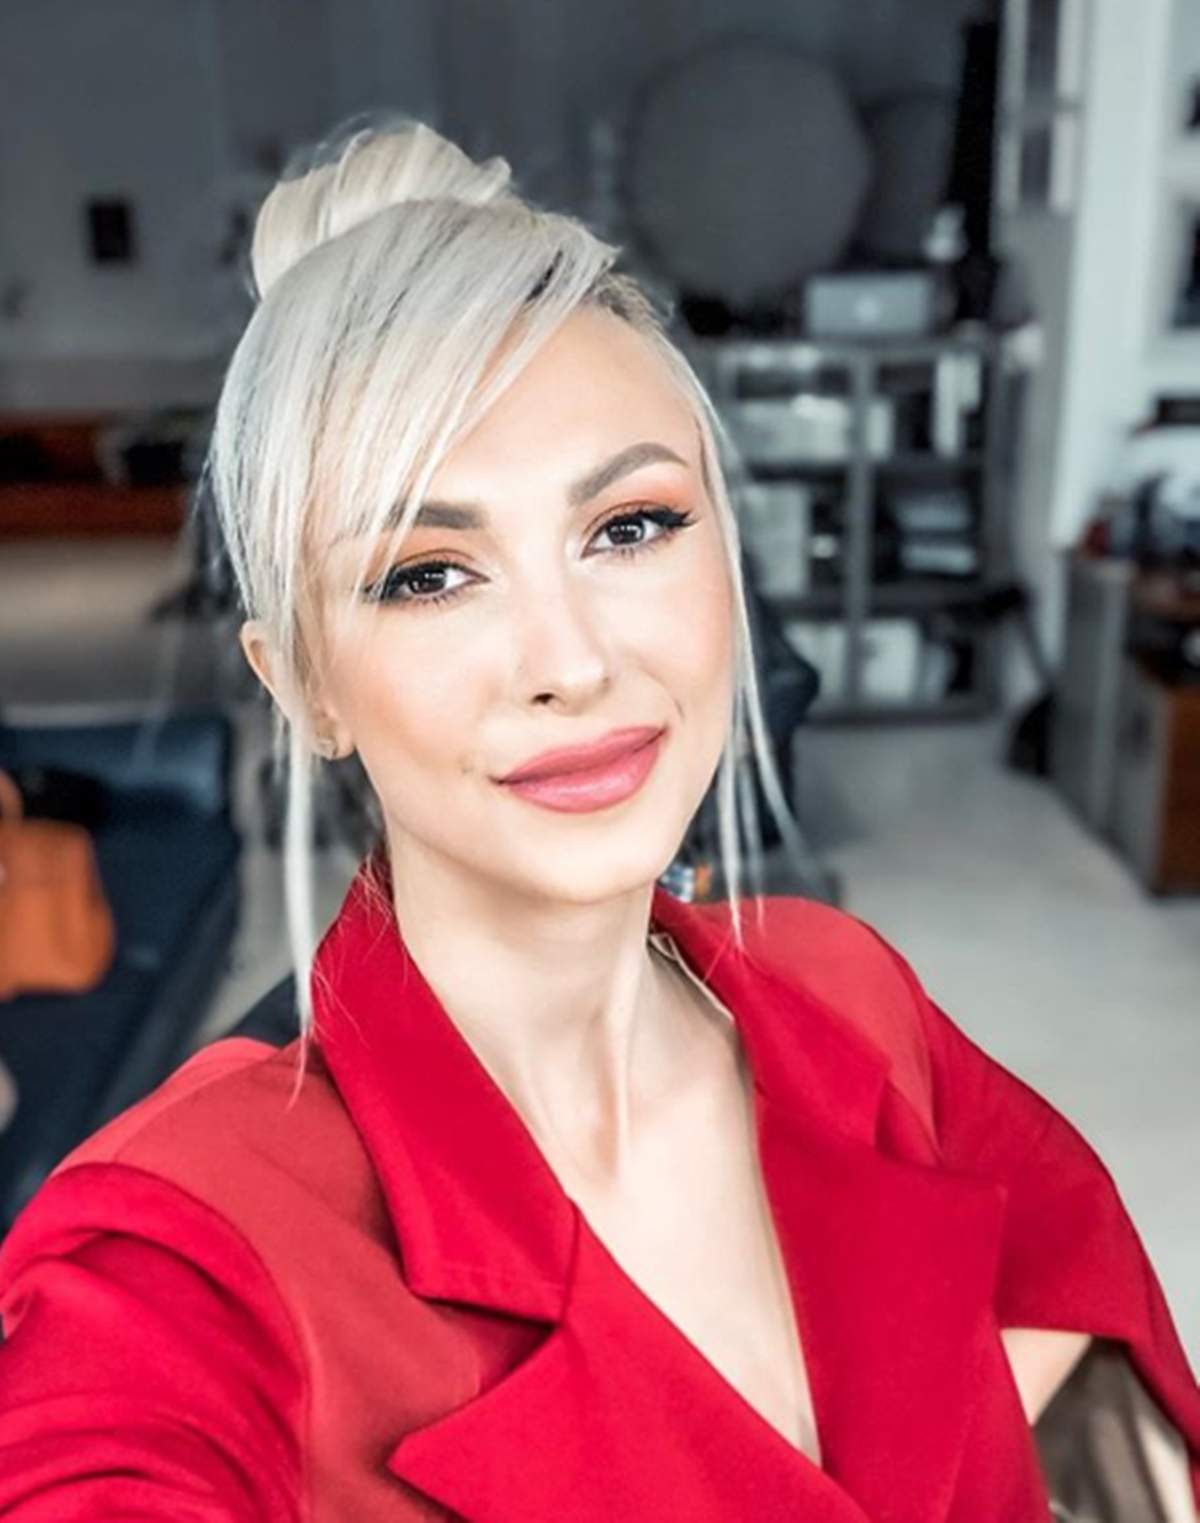 Andreea Băla și-a făcut un selfie, fiind machiată, coafată și îmbrăcată în roșu